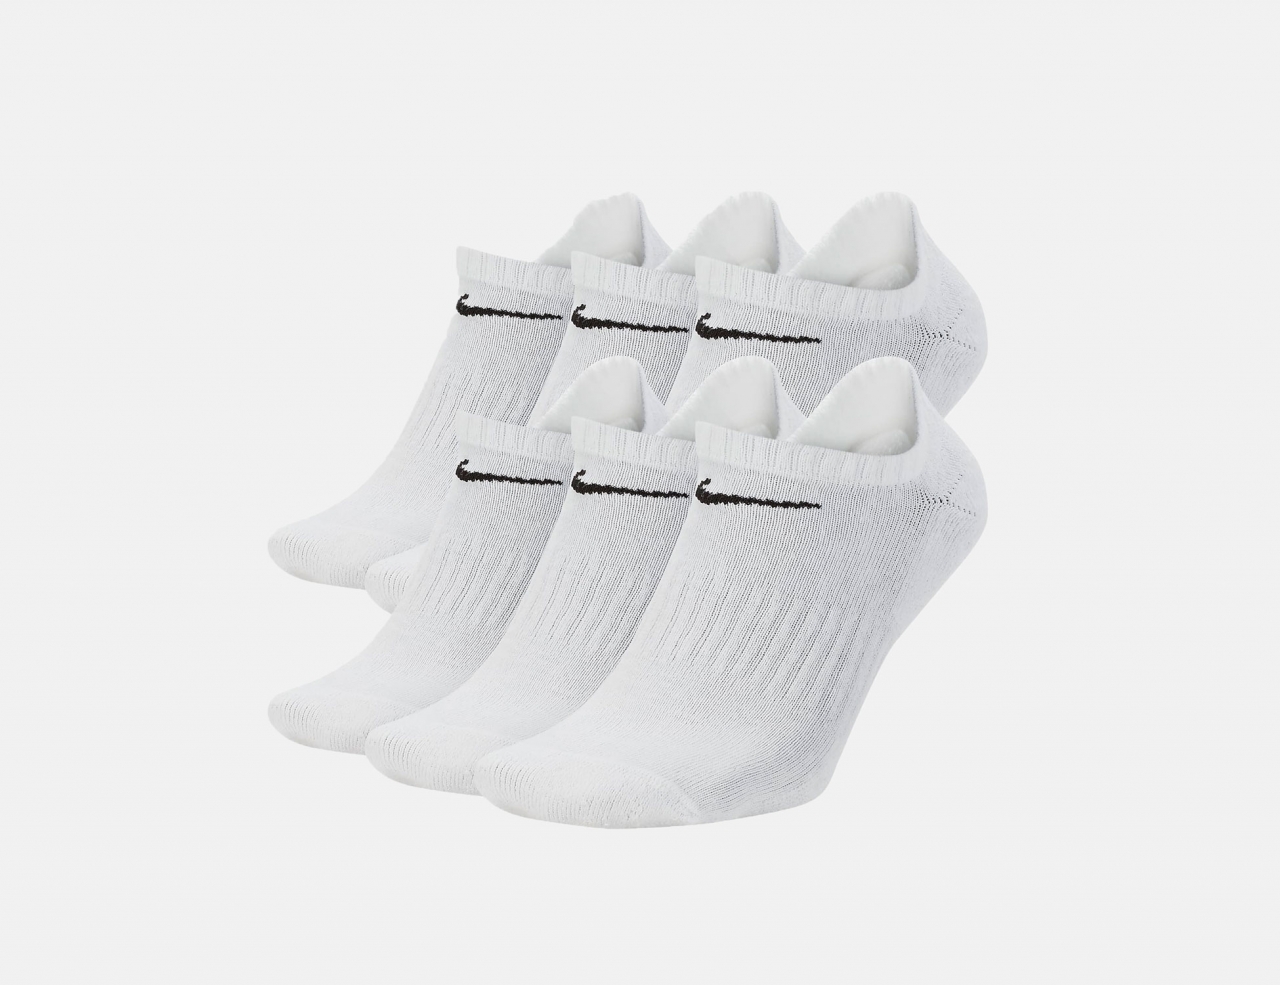 Nike SB Everyday Cush 6-Pair Socks - White